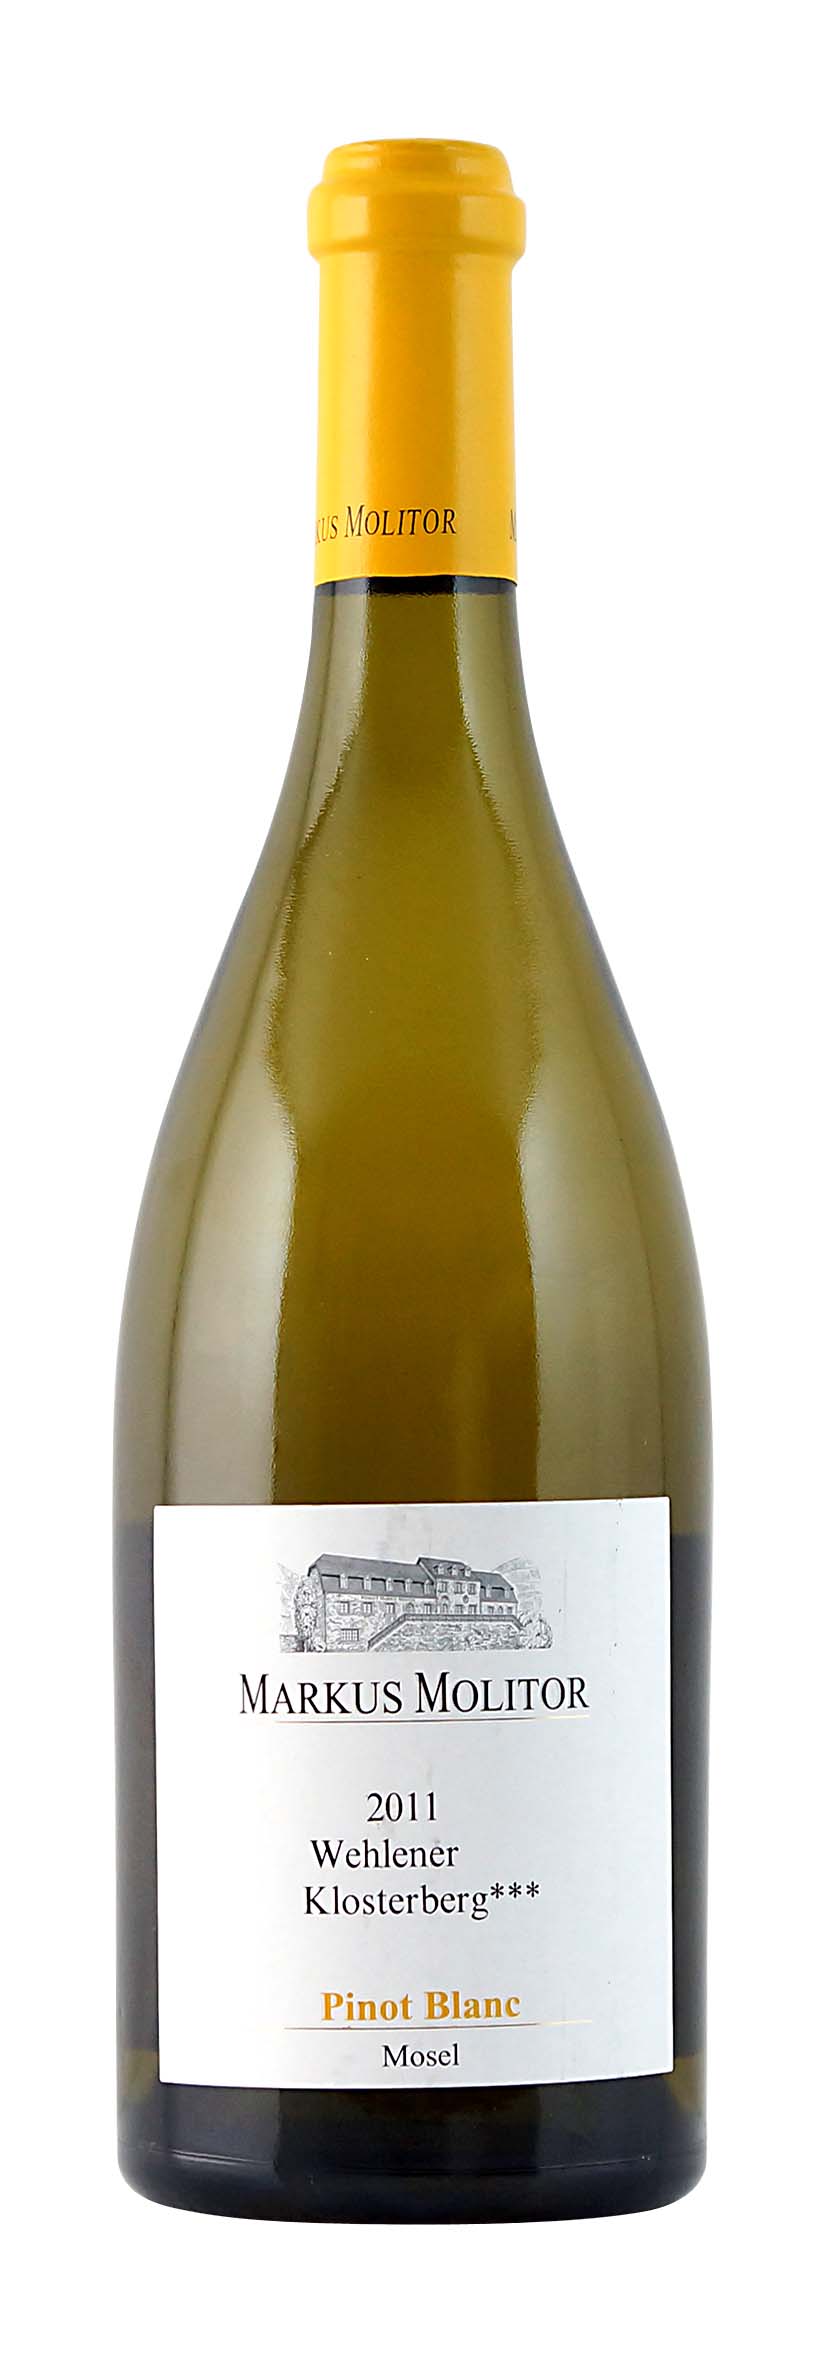 Wehlener Klosterberg Pinot Blanc 2011